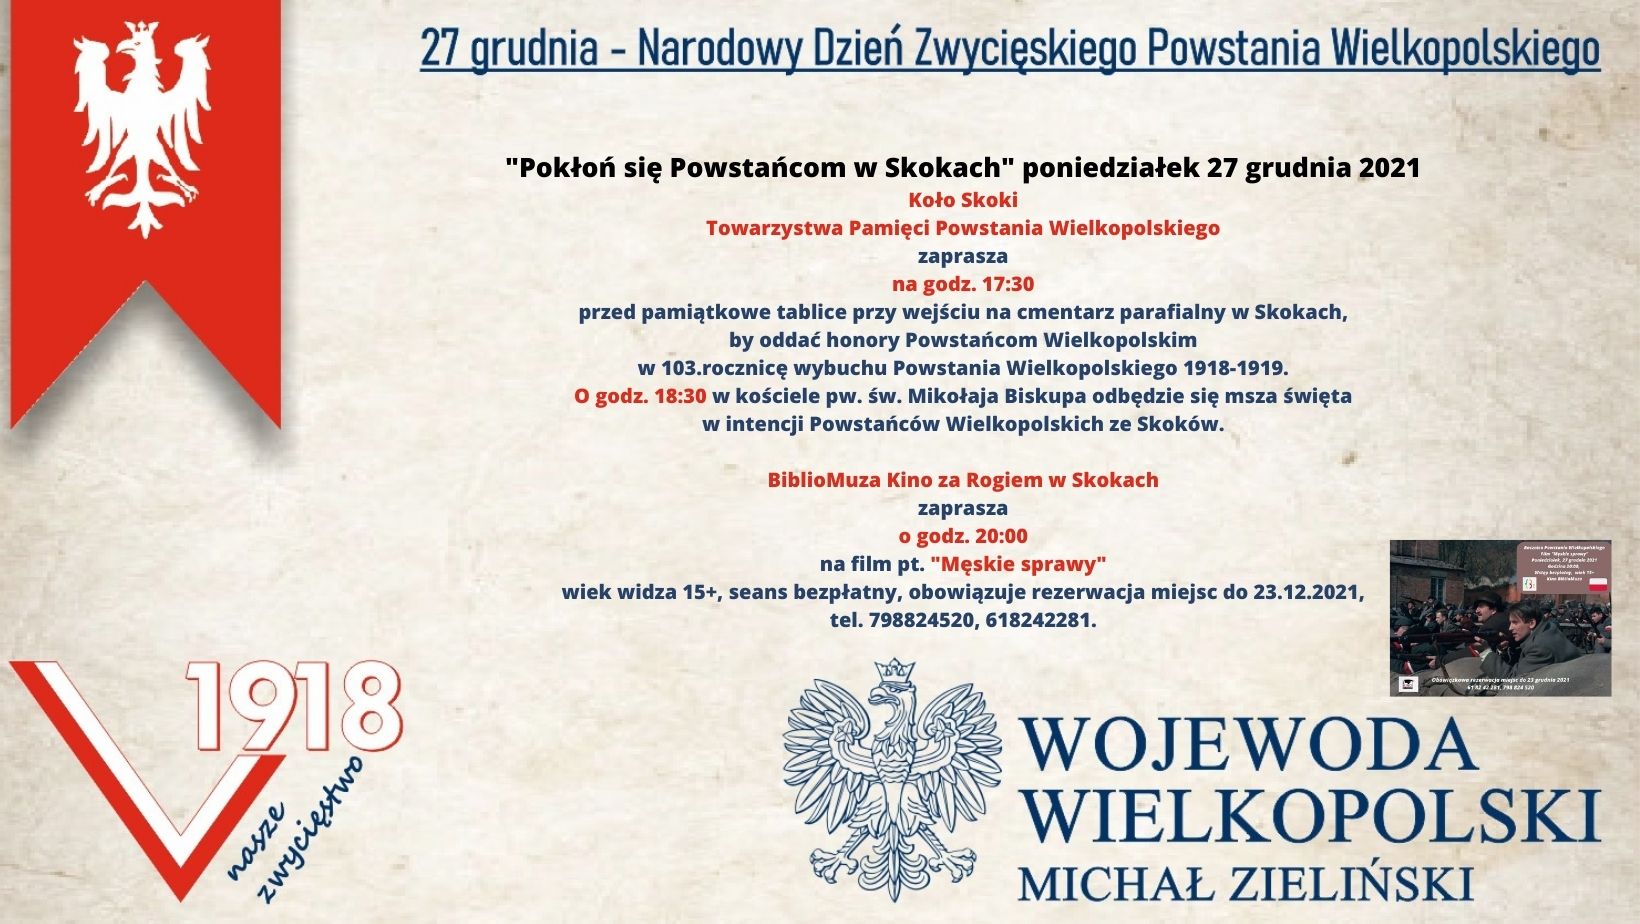 Informacja o obchodach Narodowego Dnia Zwycięskiego Powstania Wielkopolskiego 27 grudnia.